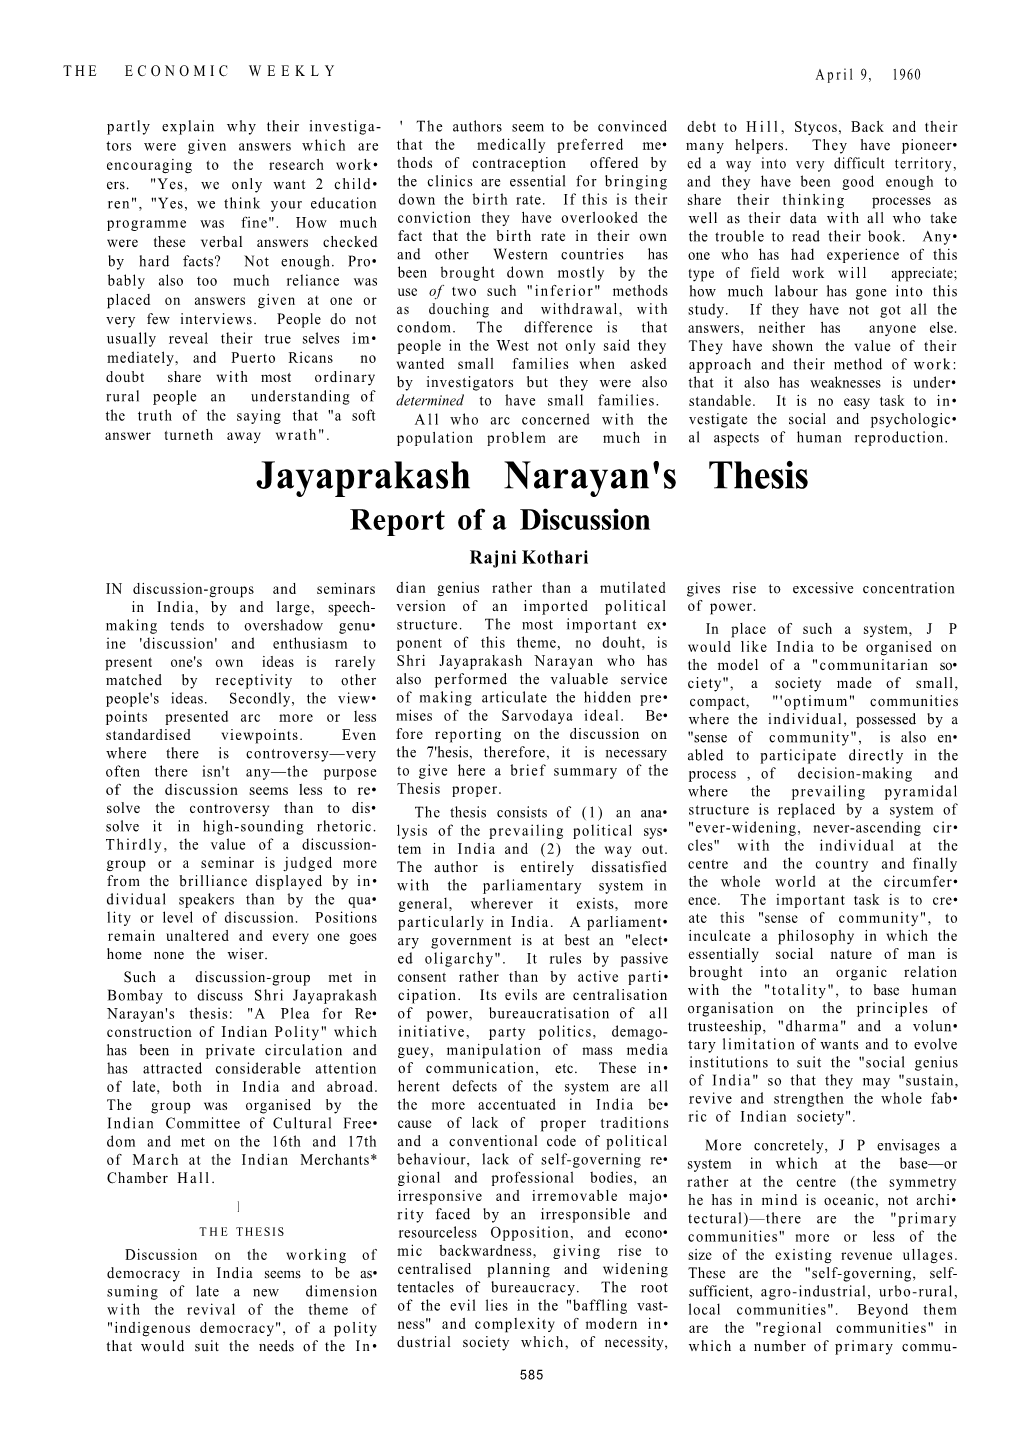 Jayaprakash Narayan's Thesis